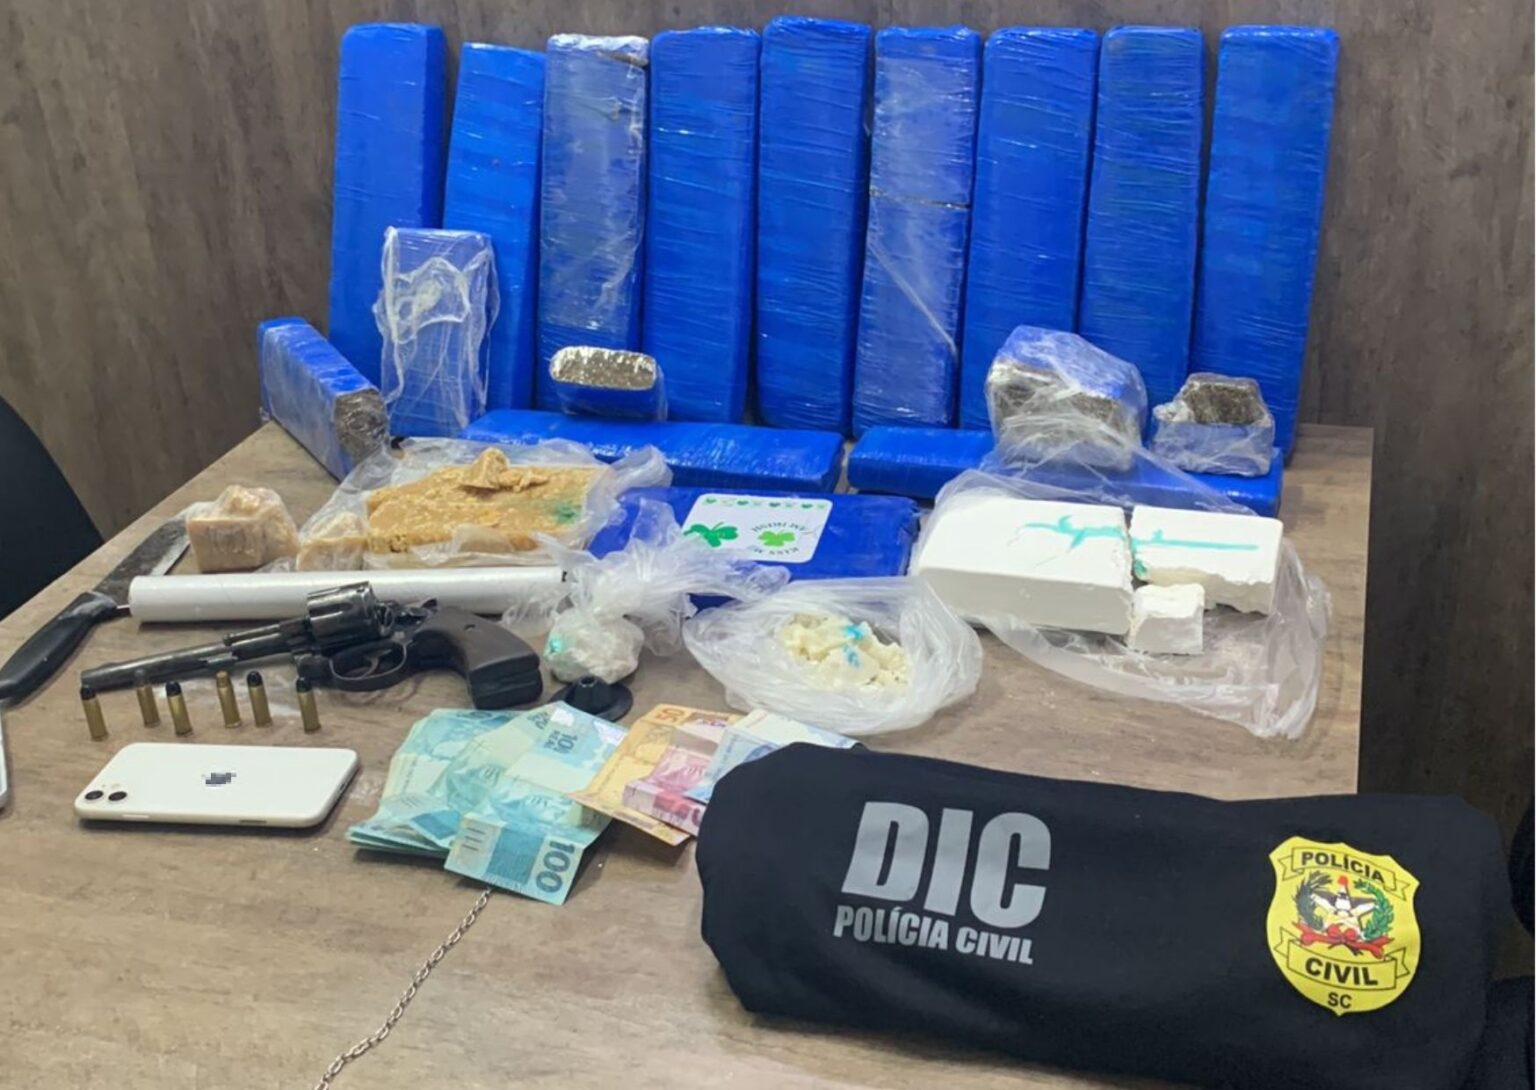 faca, celular, dinheiro, drogas e camiseta da policia civil da DIC